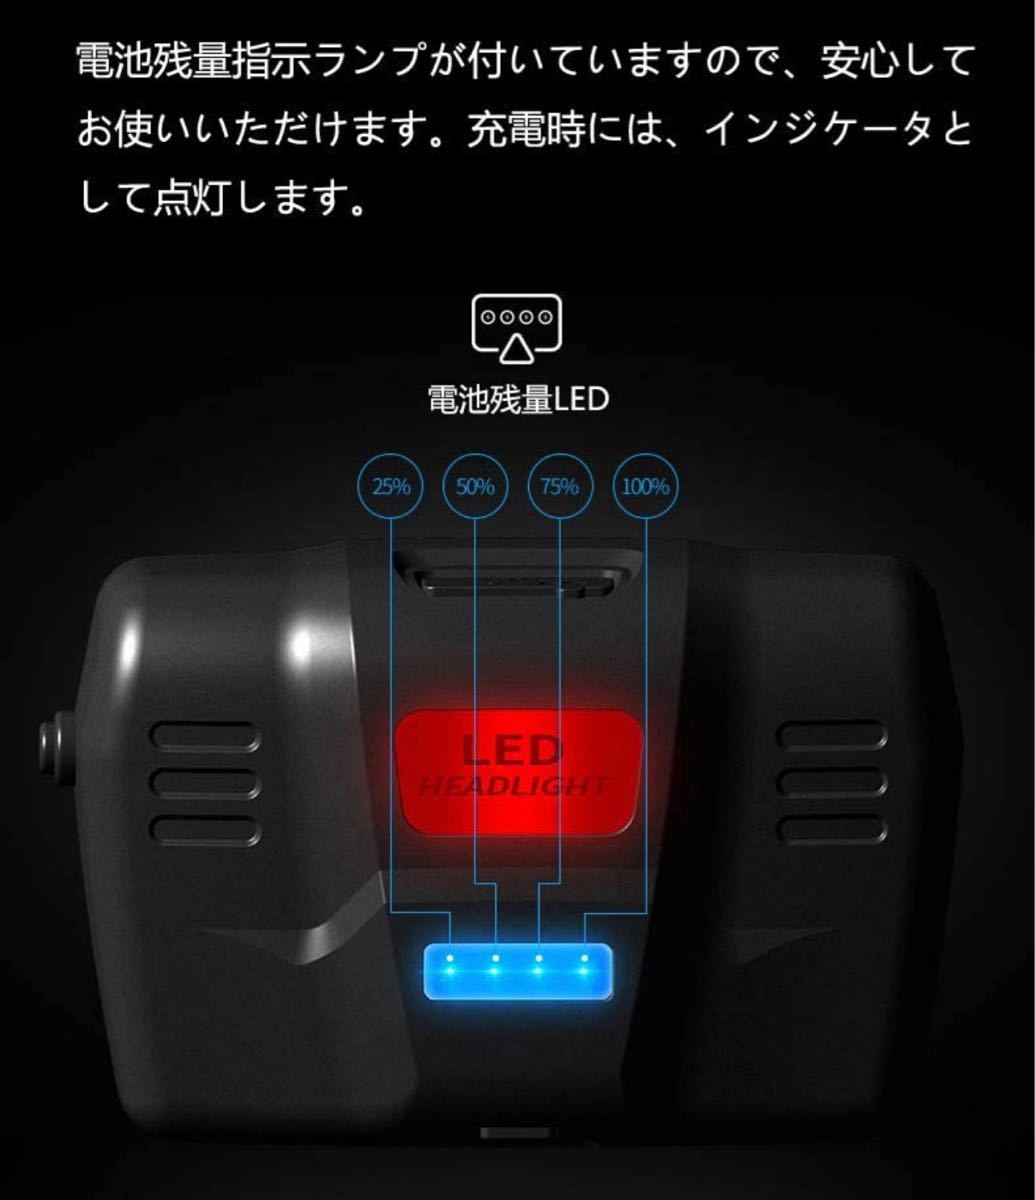 ヘッドライト LED ヘッドランプusb充電式 高輝度 4点灯モード  人感センサー電池残量指示ランプ 防水仕様